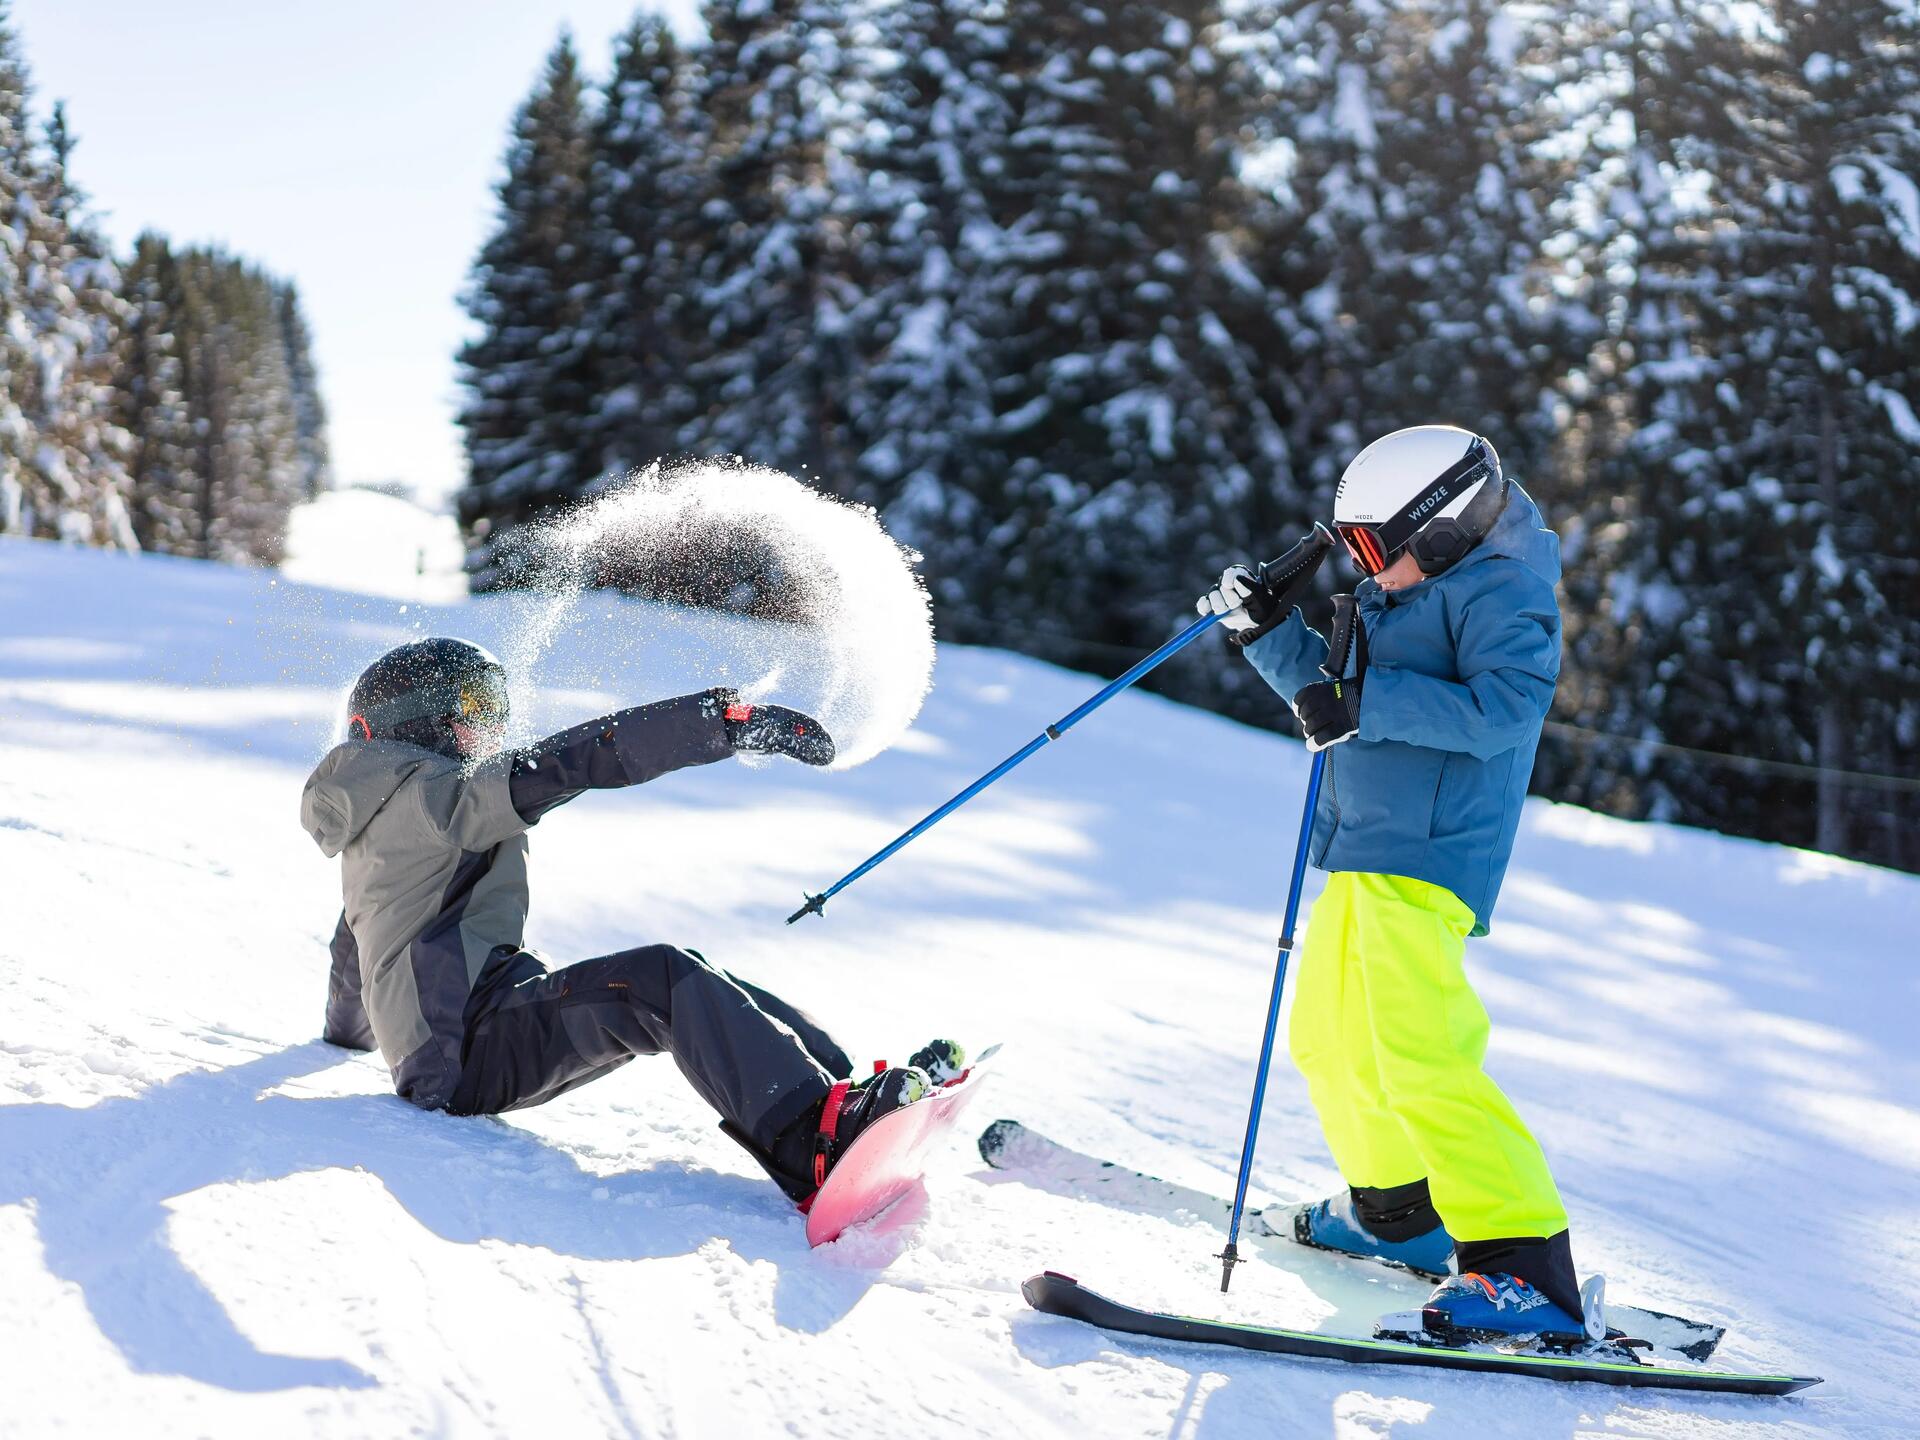 Comment faire des économies en achetant son matériel de ski/snow ?